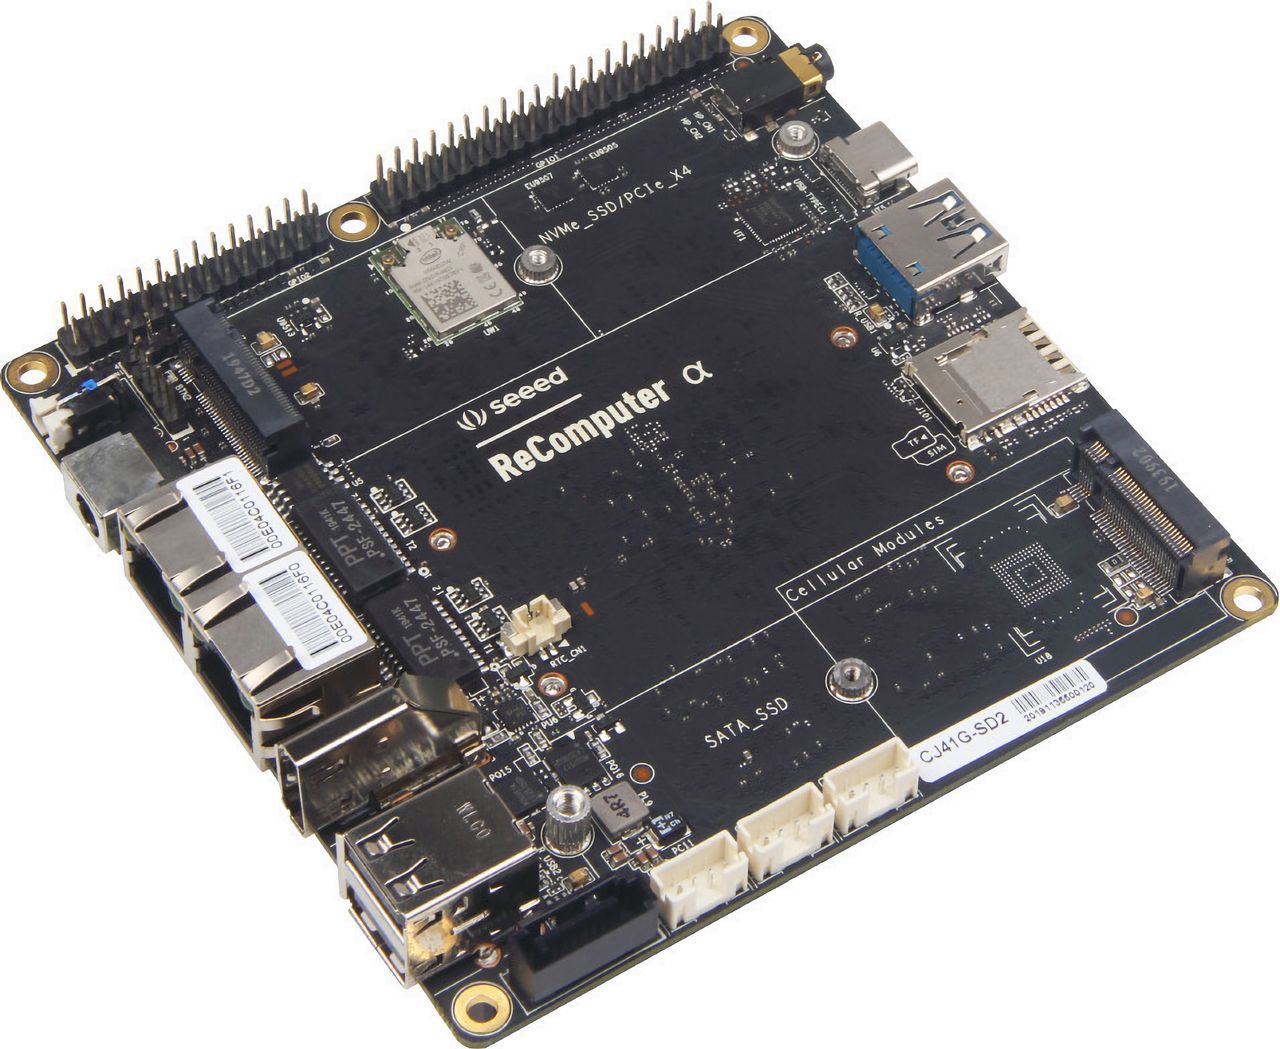 Minikomputer jednopłytowy ODYSSEY X86J4105800 na Celeronie zgodny z Arduino i Raspberry Pi